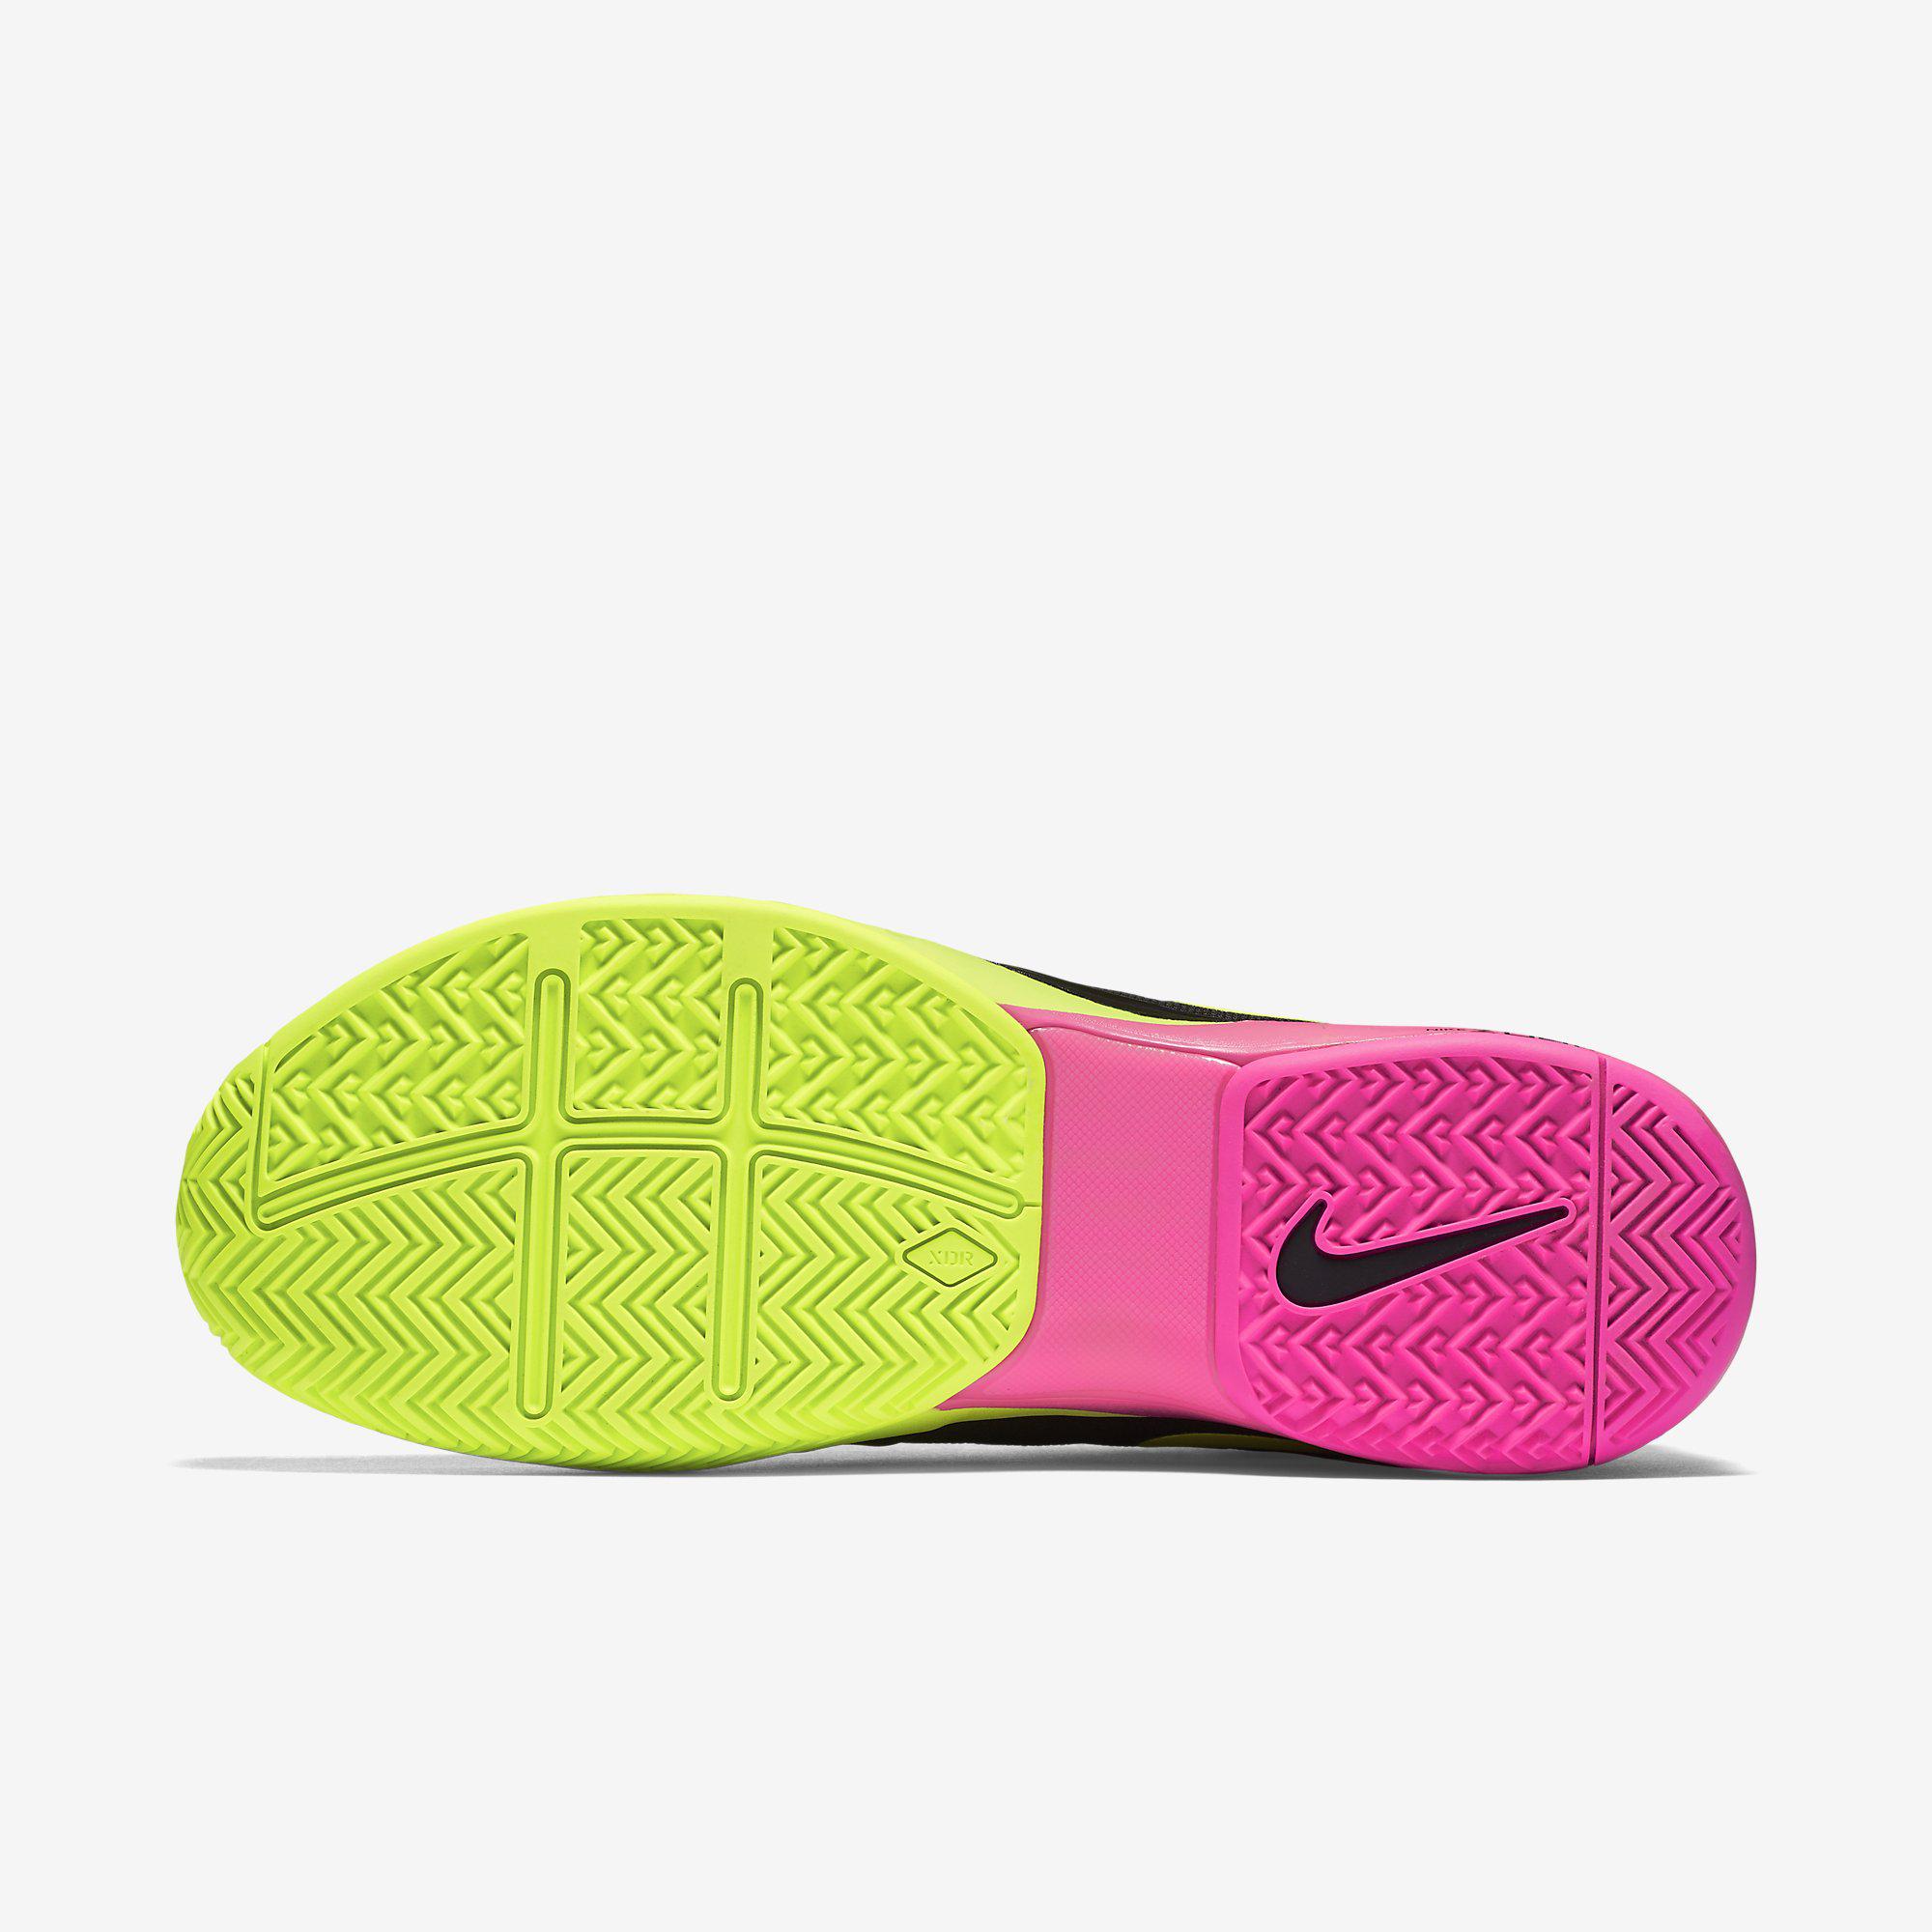 Nike Mens Zoom Vapor 9.5 Tour Tennis Shoes - Black/Volt/Pink ...